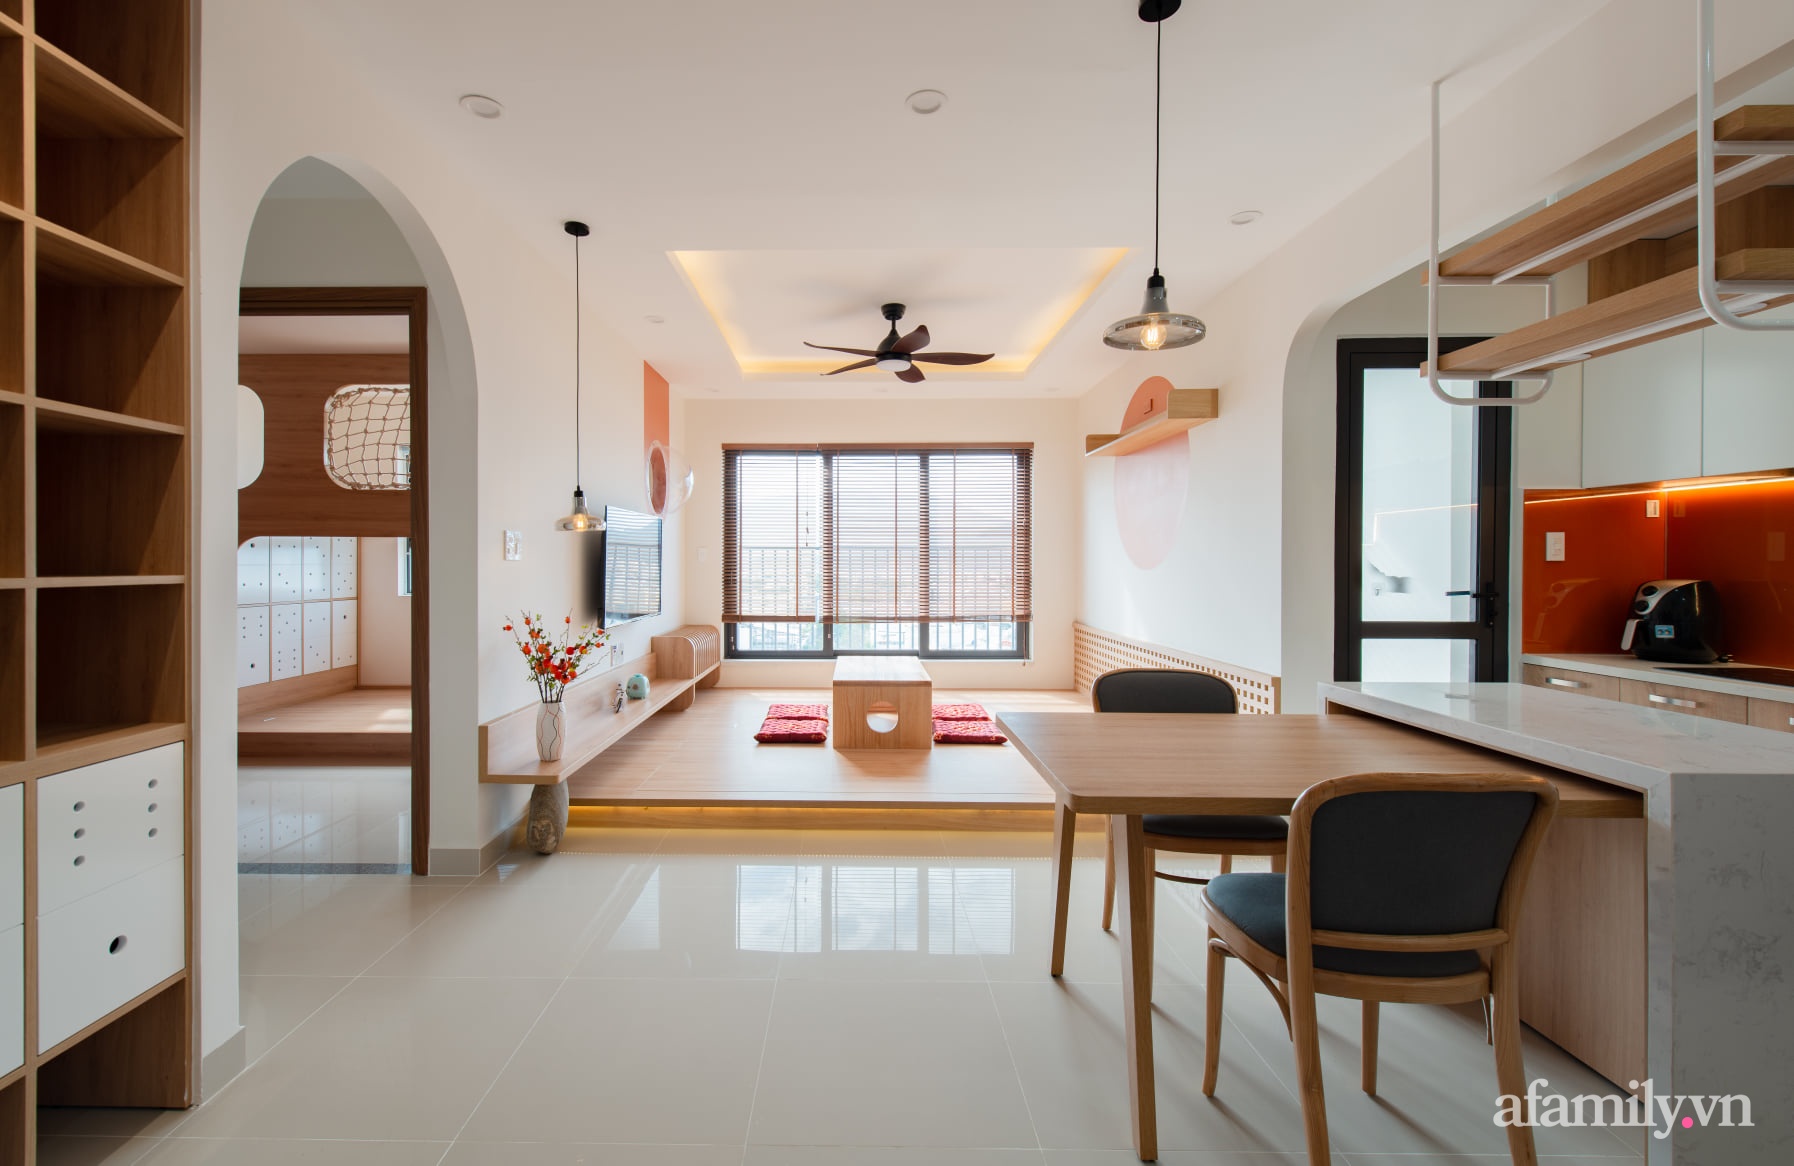 Căn hộ 78m² với tông cam đất ngọt ngào cùng đường cong mềm mại mang hơi hướng phong cách Nhật ở Nha Trang - Ảnh 13.